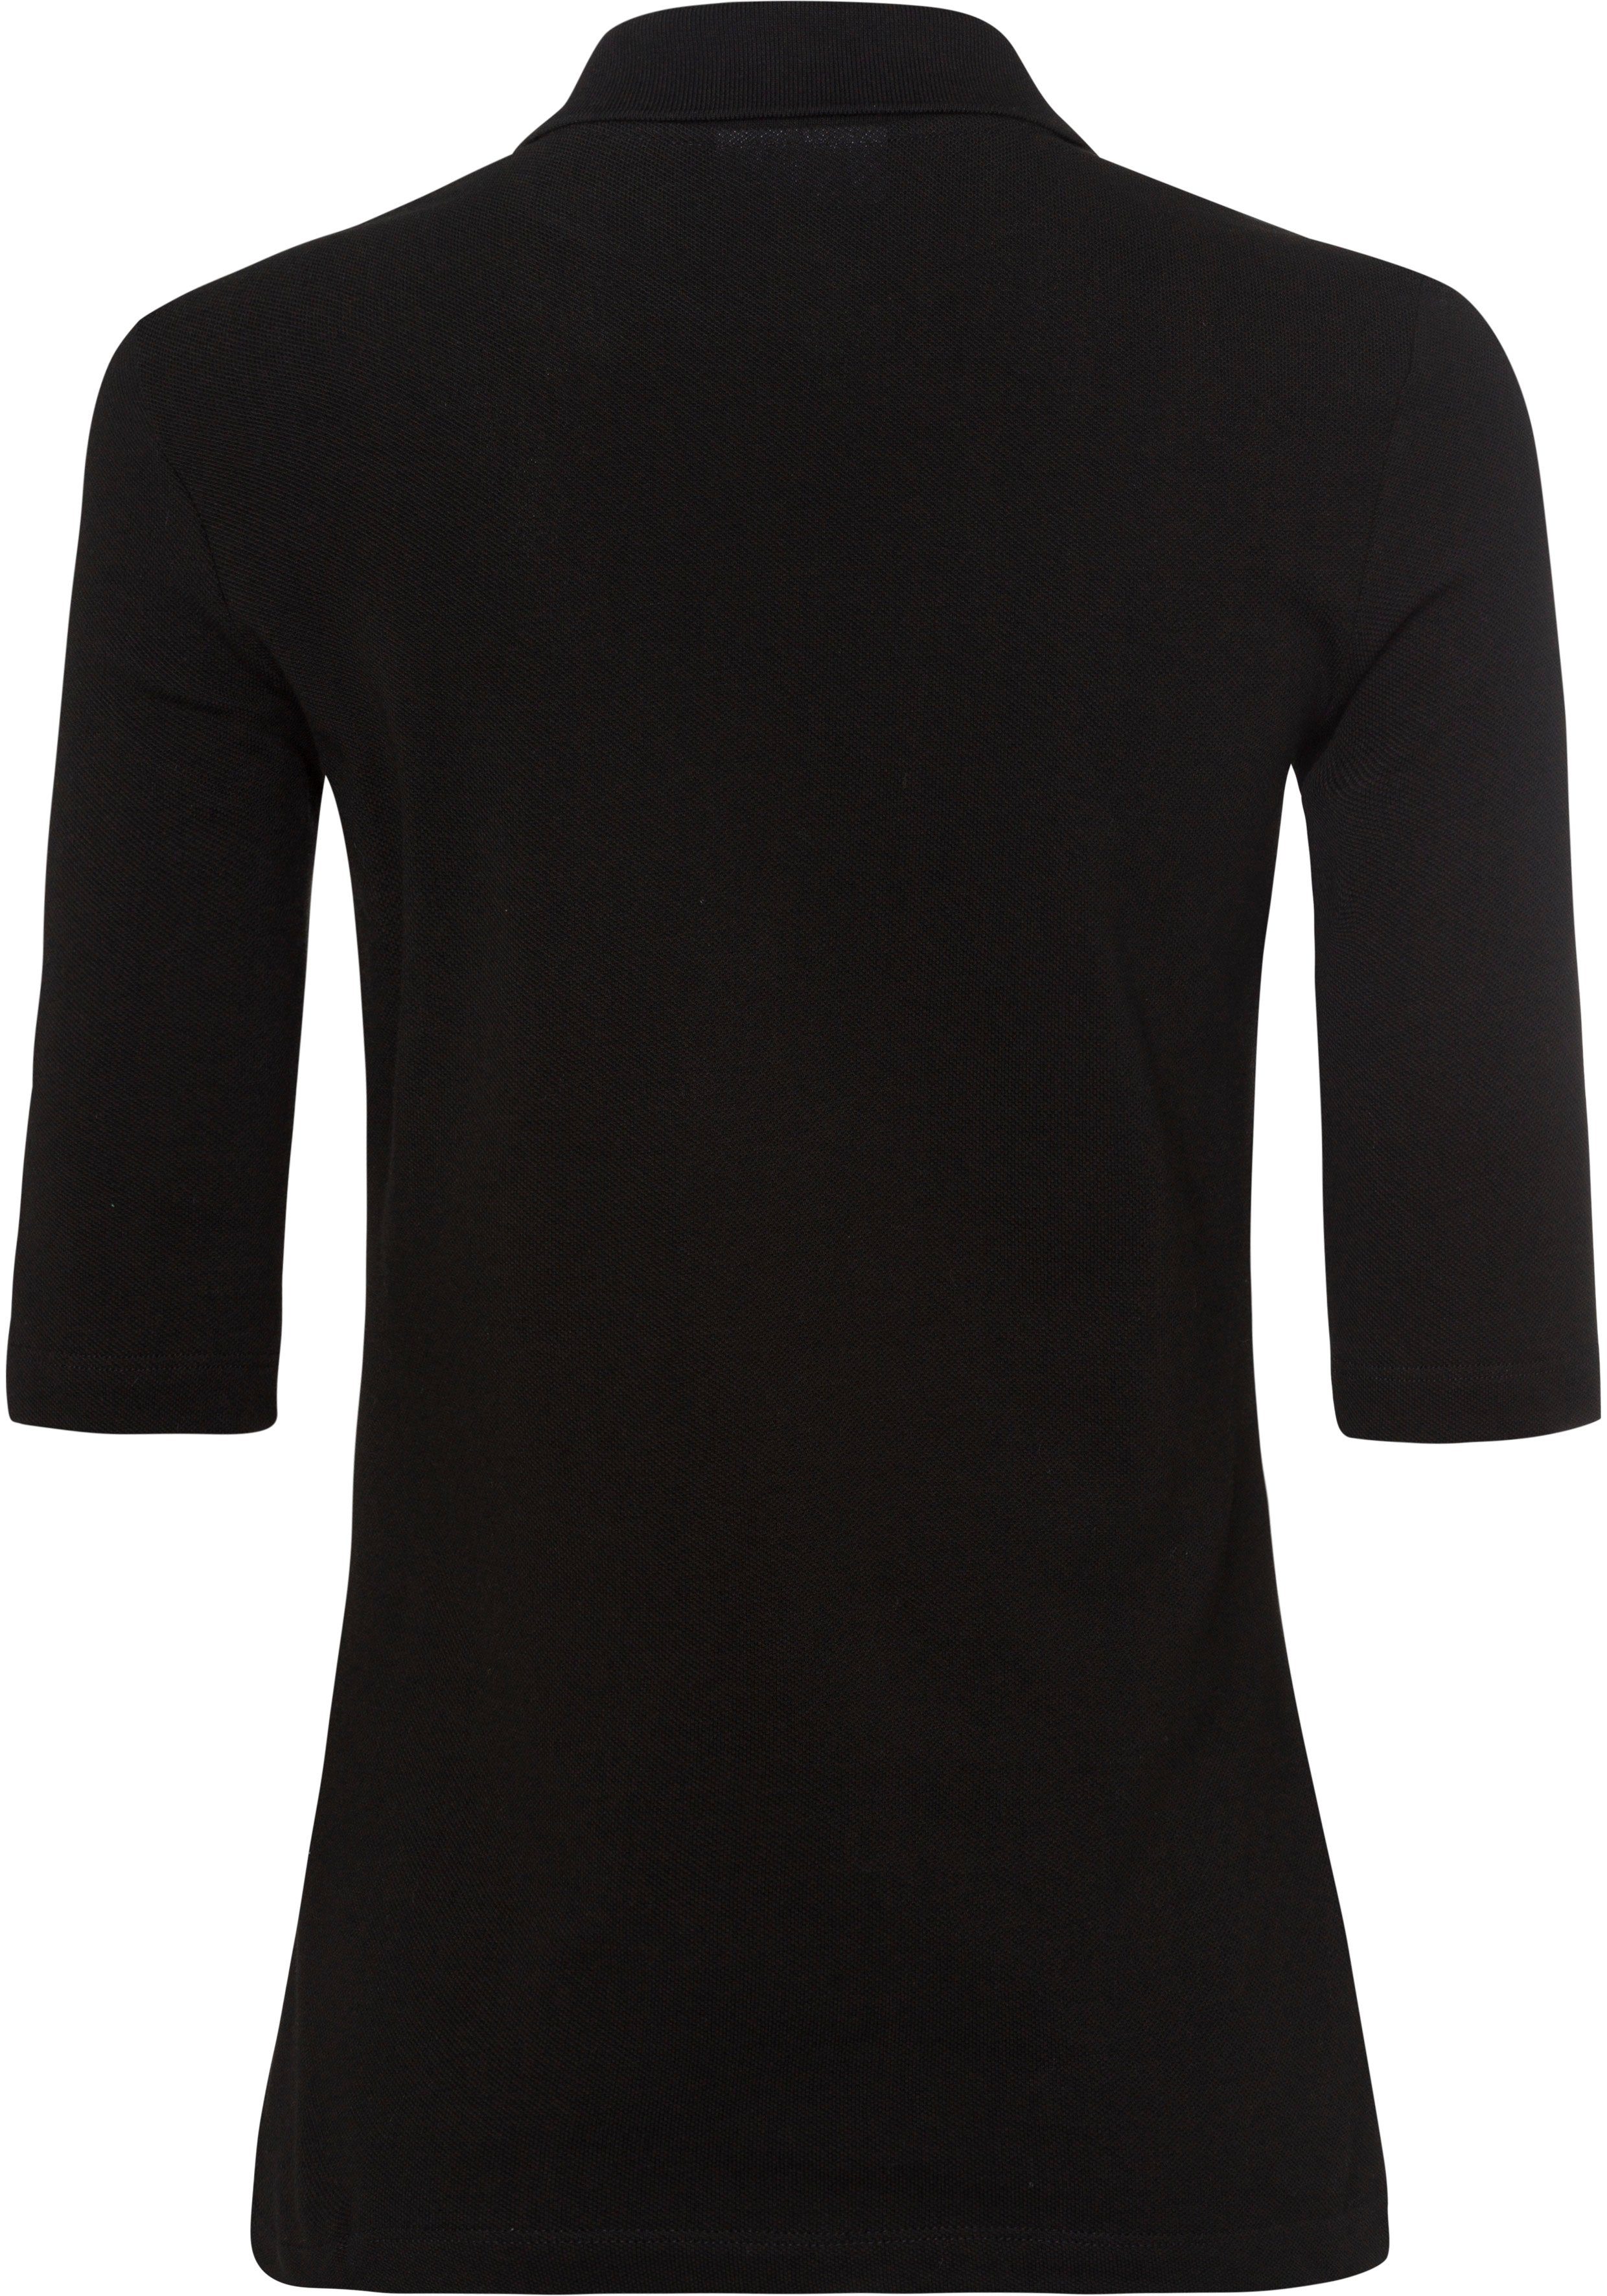 Lacoste Poloshirt mit tonigem Brust der Logo auf schwarz